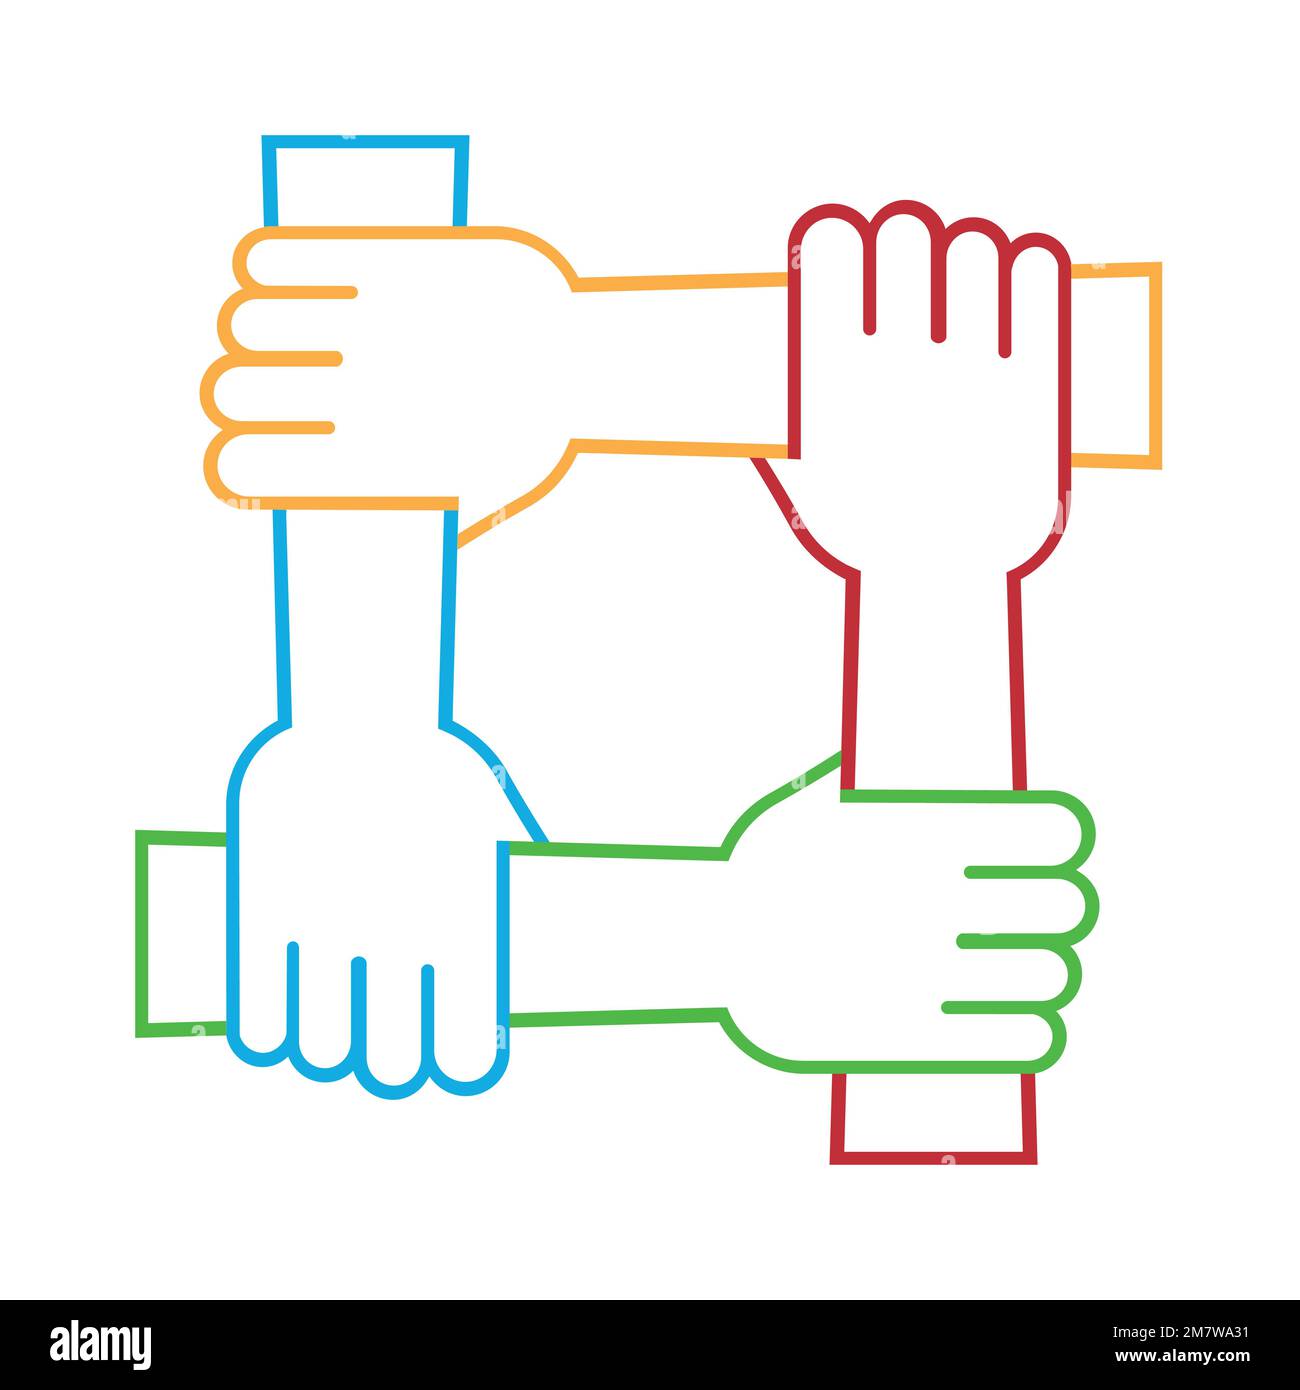 Quattro mani tengono insieme per il polso l'altro. Quattro mani collegate. Simbolo della convivenza. isolato su sfondo bianco. Illustrazione vettoriale. EPS 10 Illustrazione Vettoriale